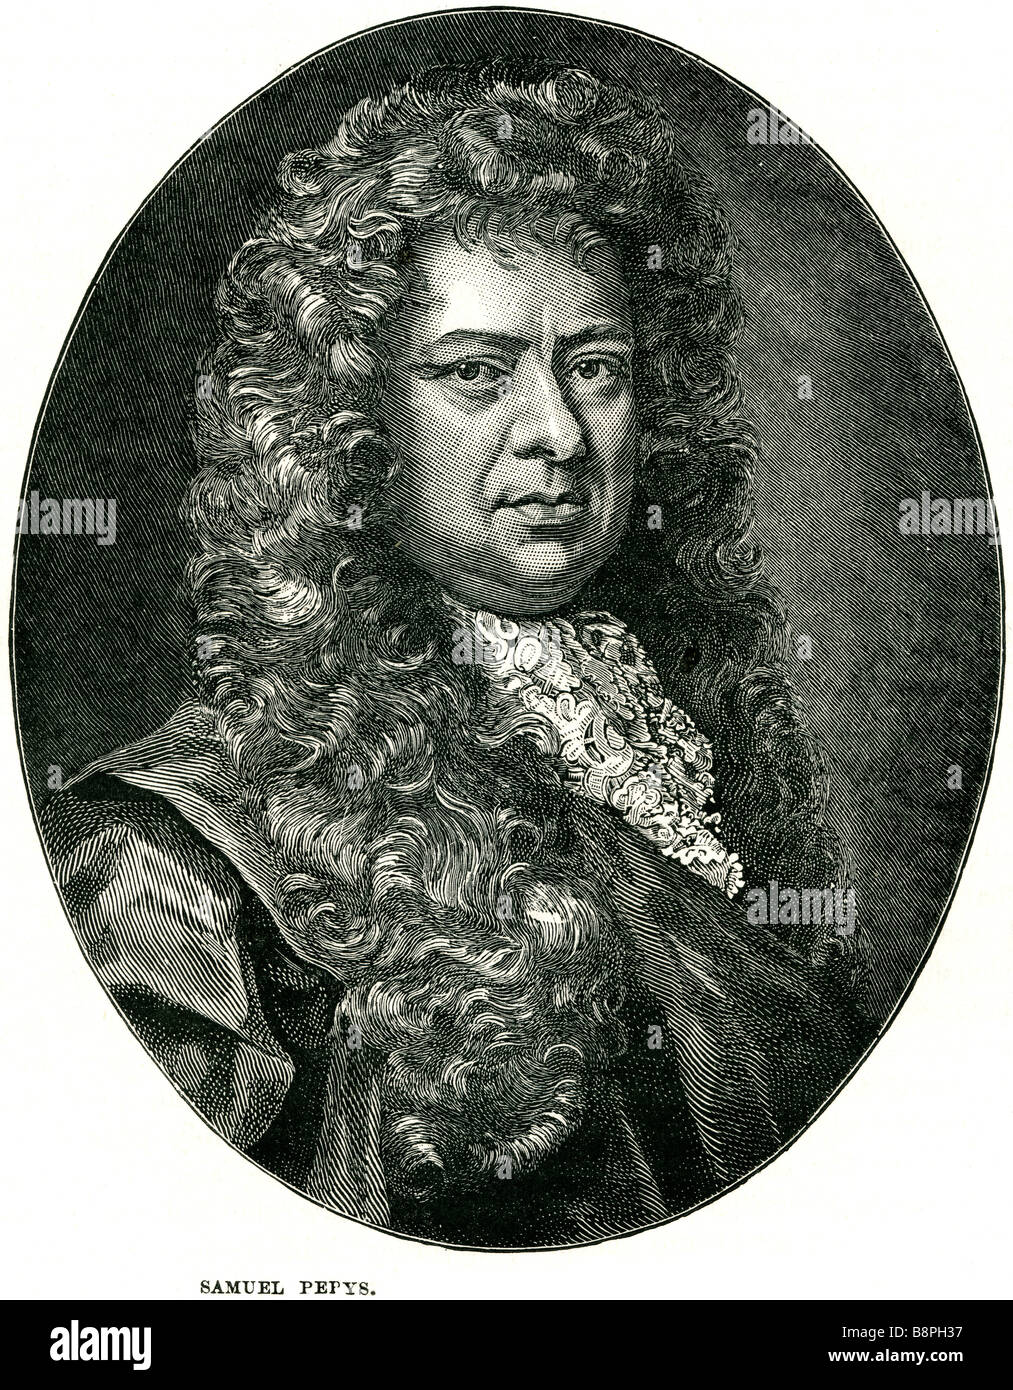 Samuel Pepys, FRS (23 febbraio 1633 - 26 Maggio 1703) era un inglese un amministratore navale e membro del Parlamento europeo, che è ora più Foto Stock